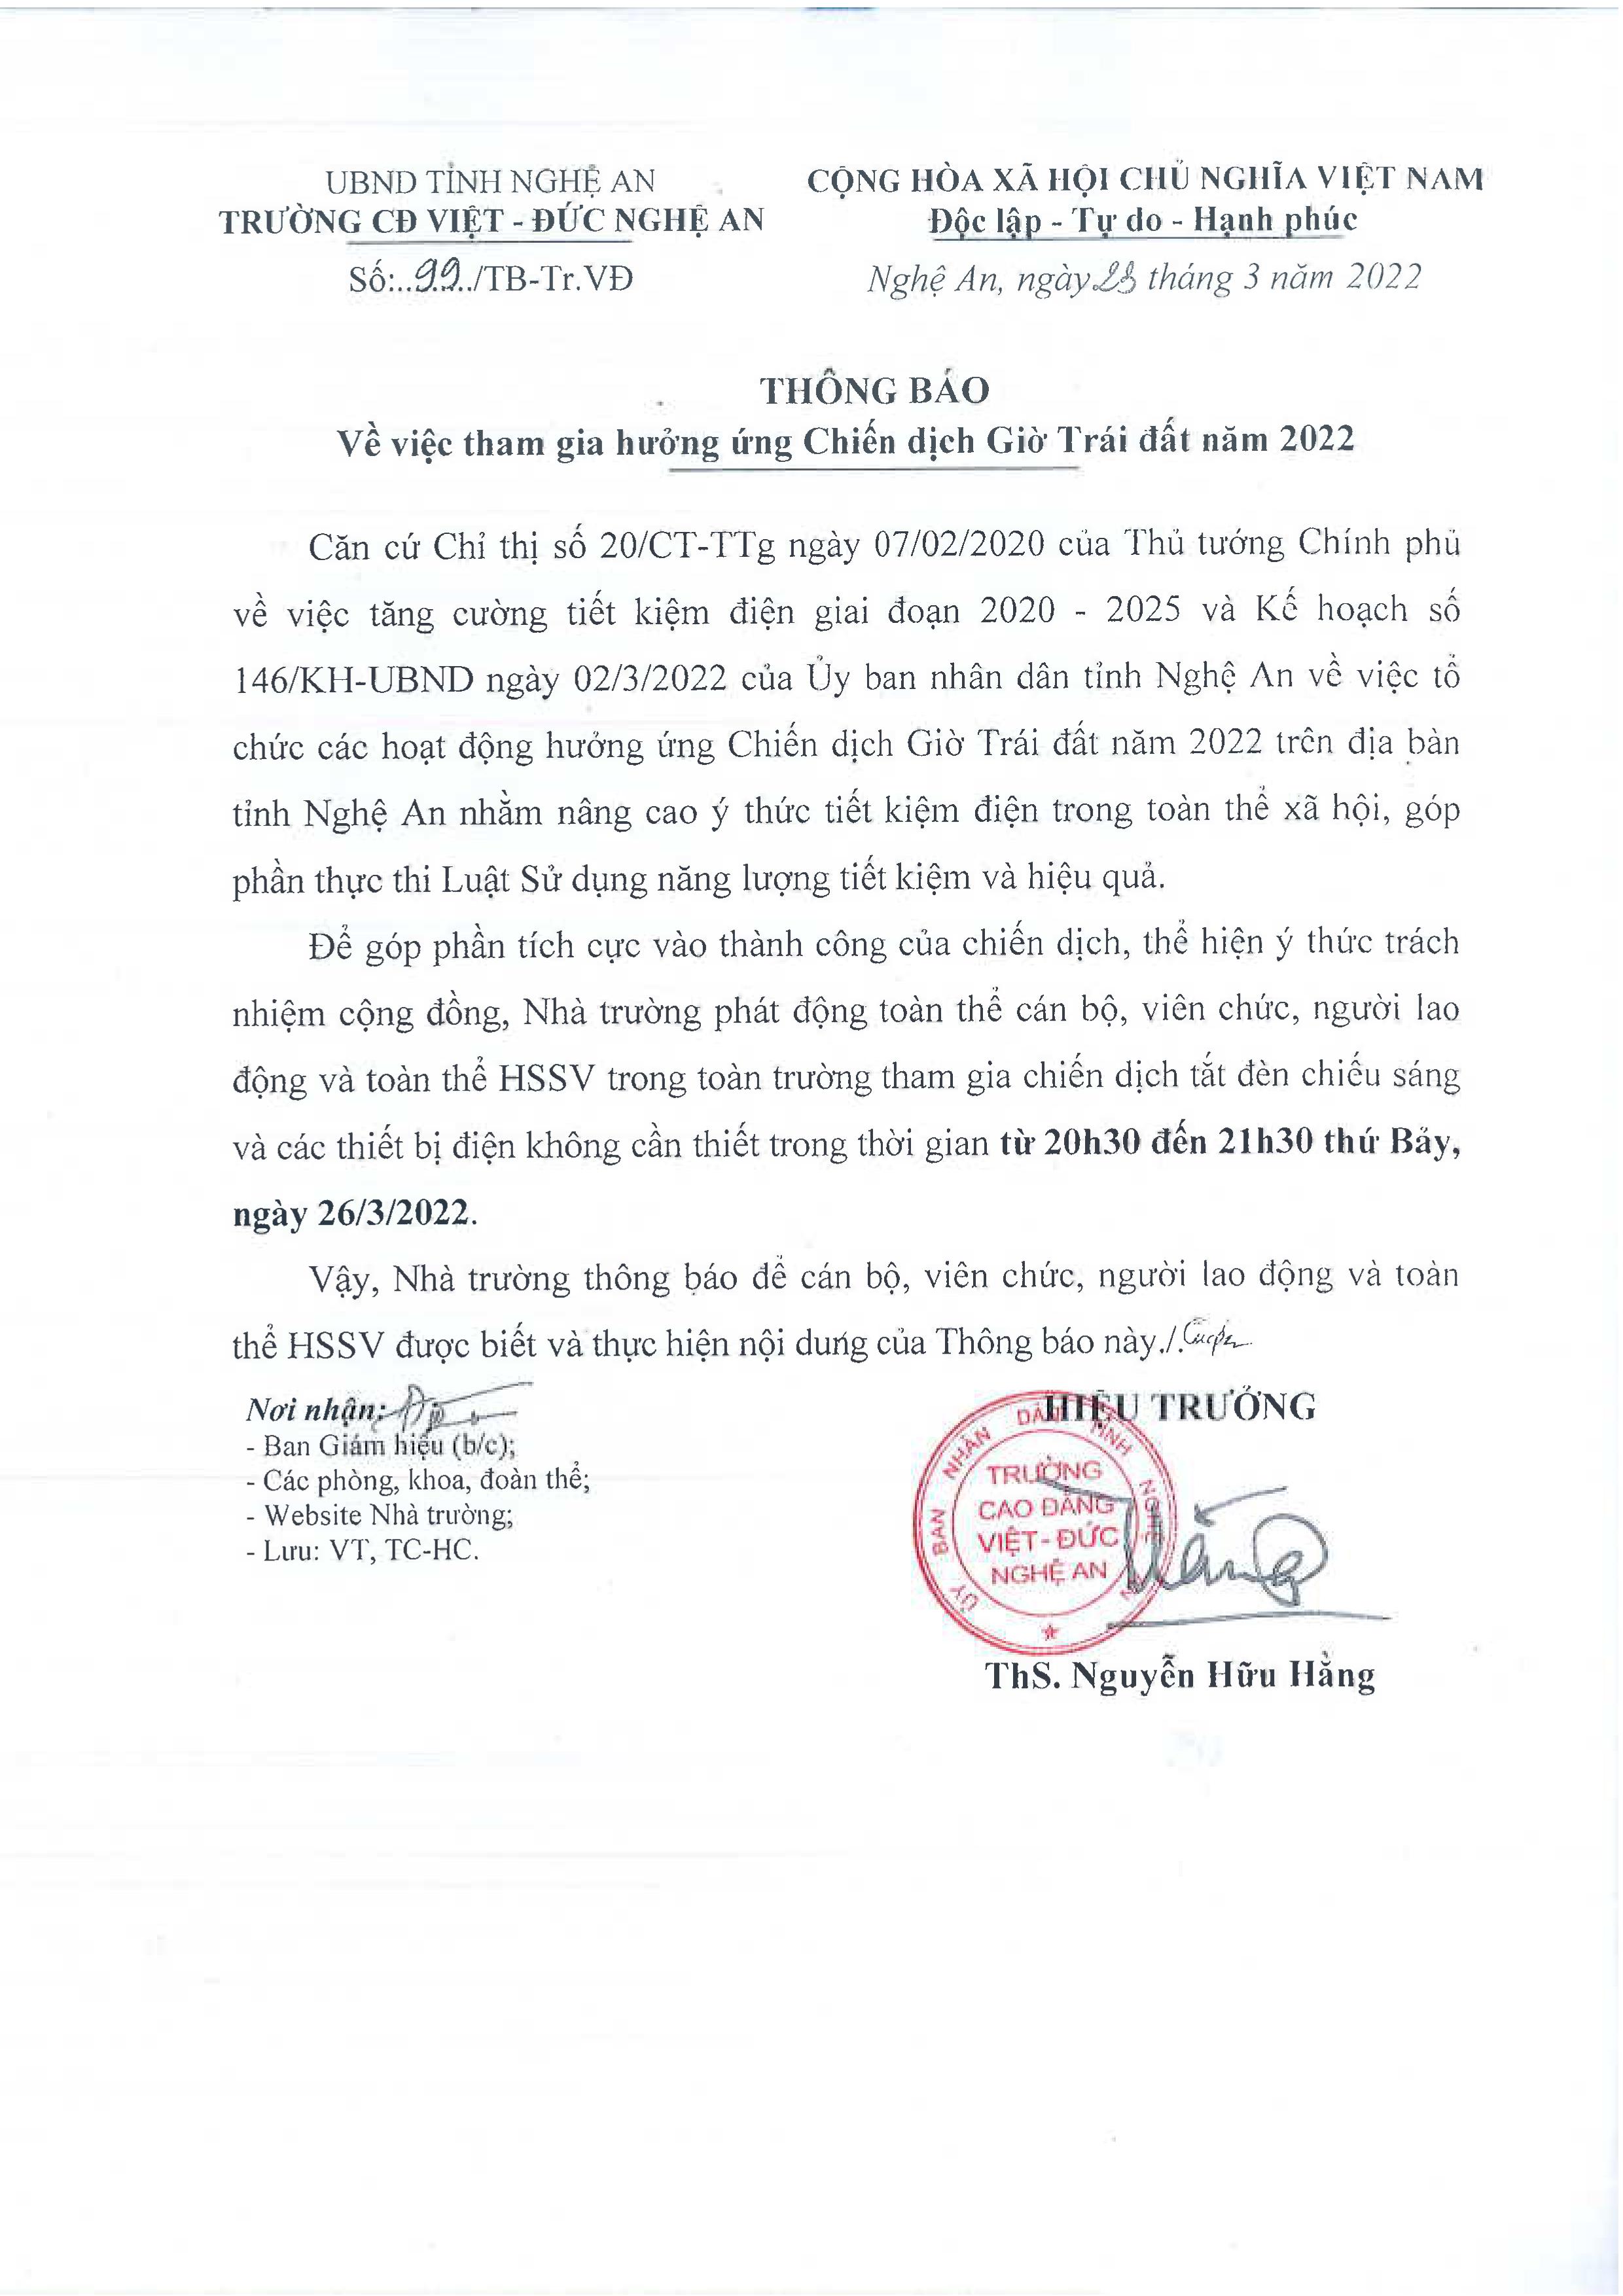 Thông báo số 99/TB-Tr.VĐ ngày 23/3/2022 của Trường Cao đẳng Việt - Đức Nghệ An về việc tham gia hưởng ứng Chiến dịch Giờ Trái đất năm 2022